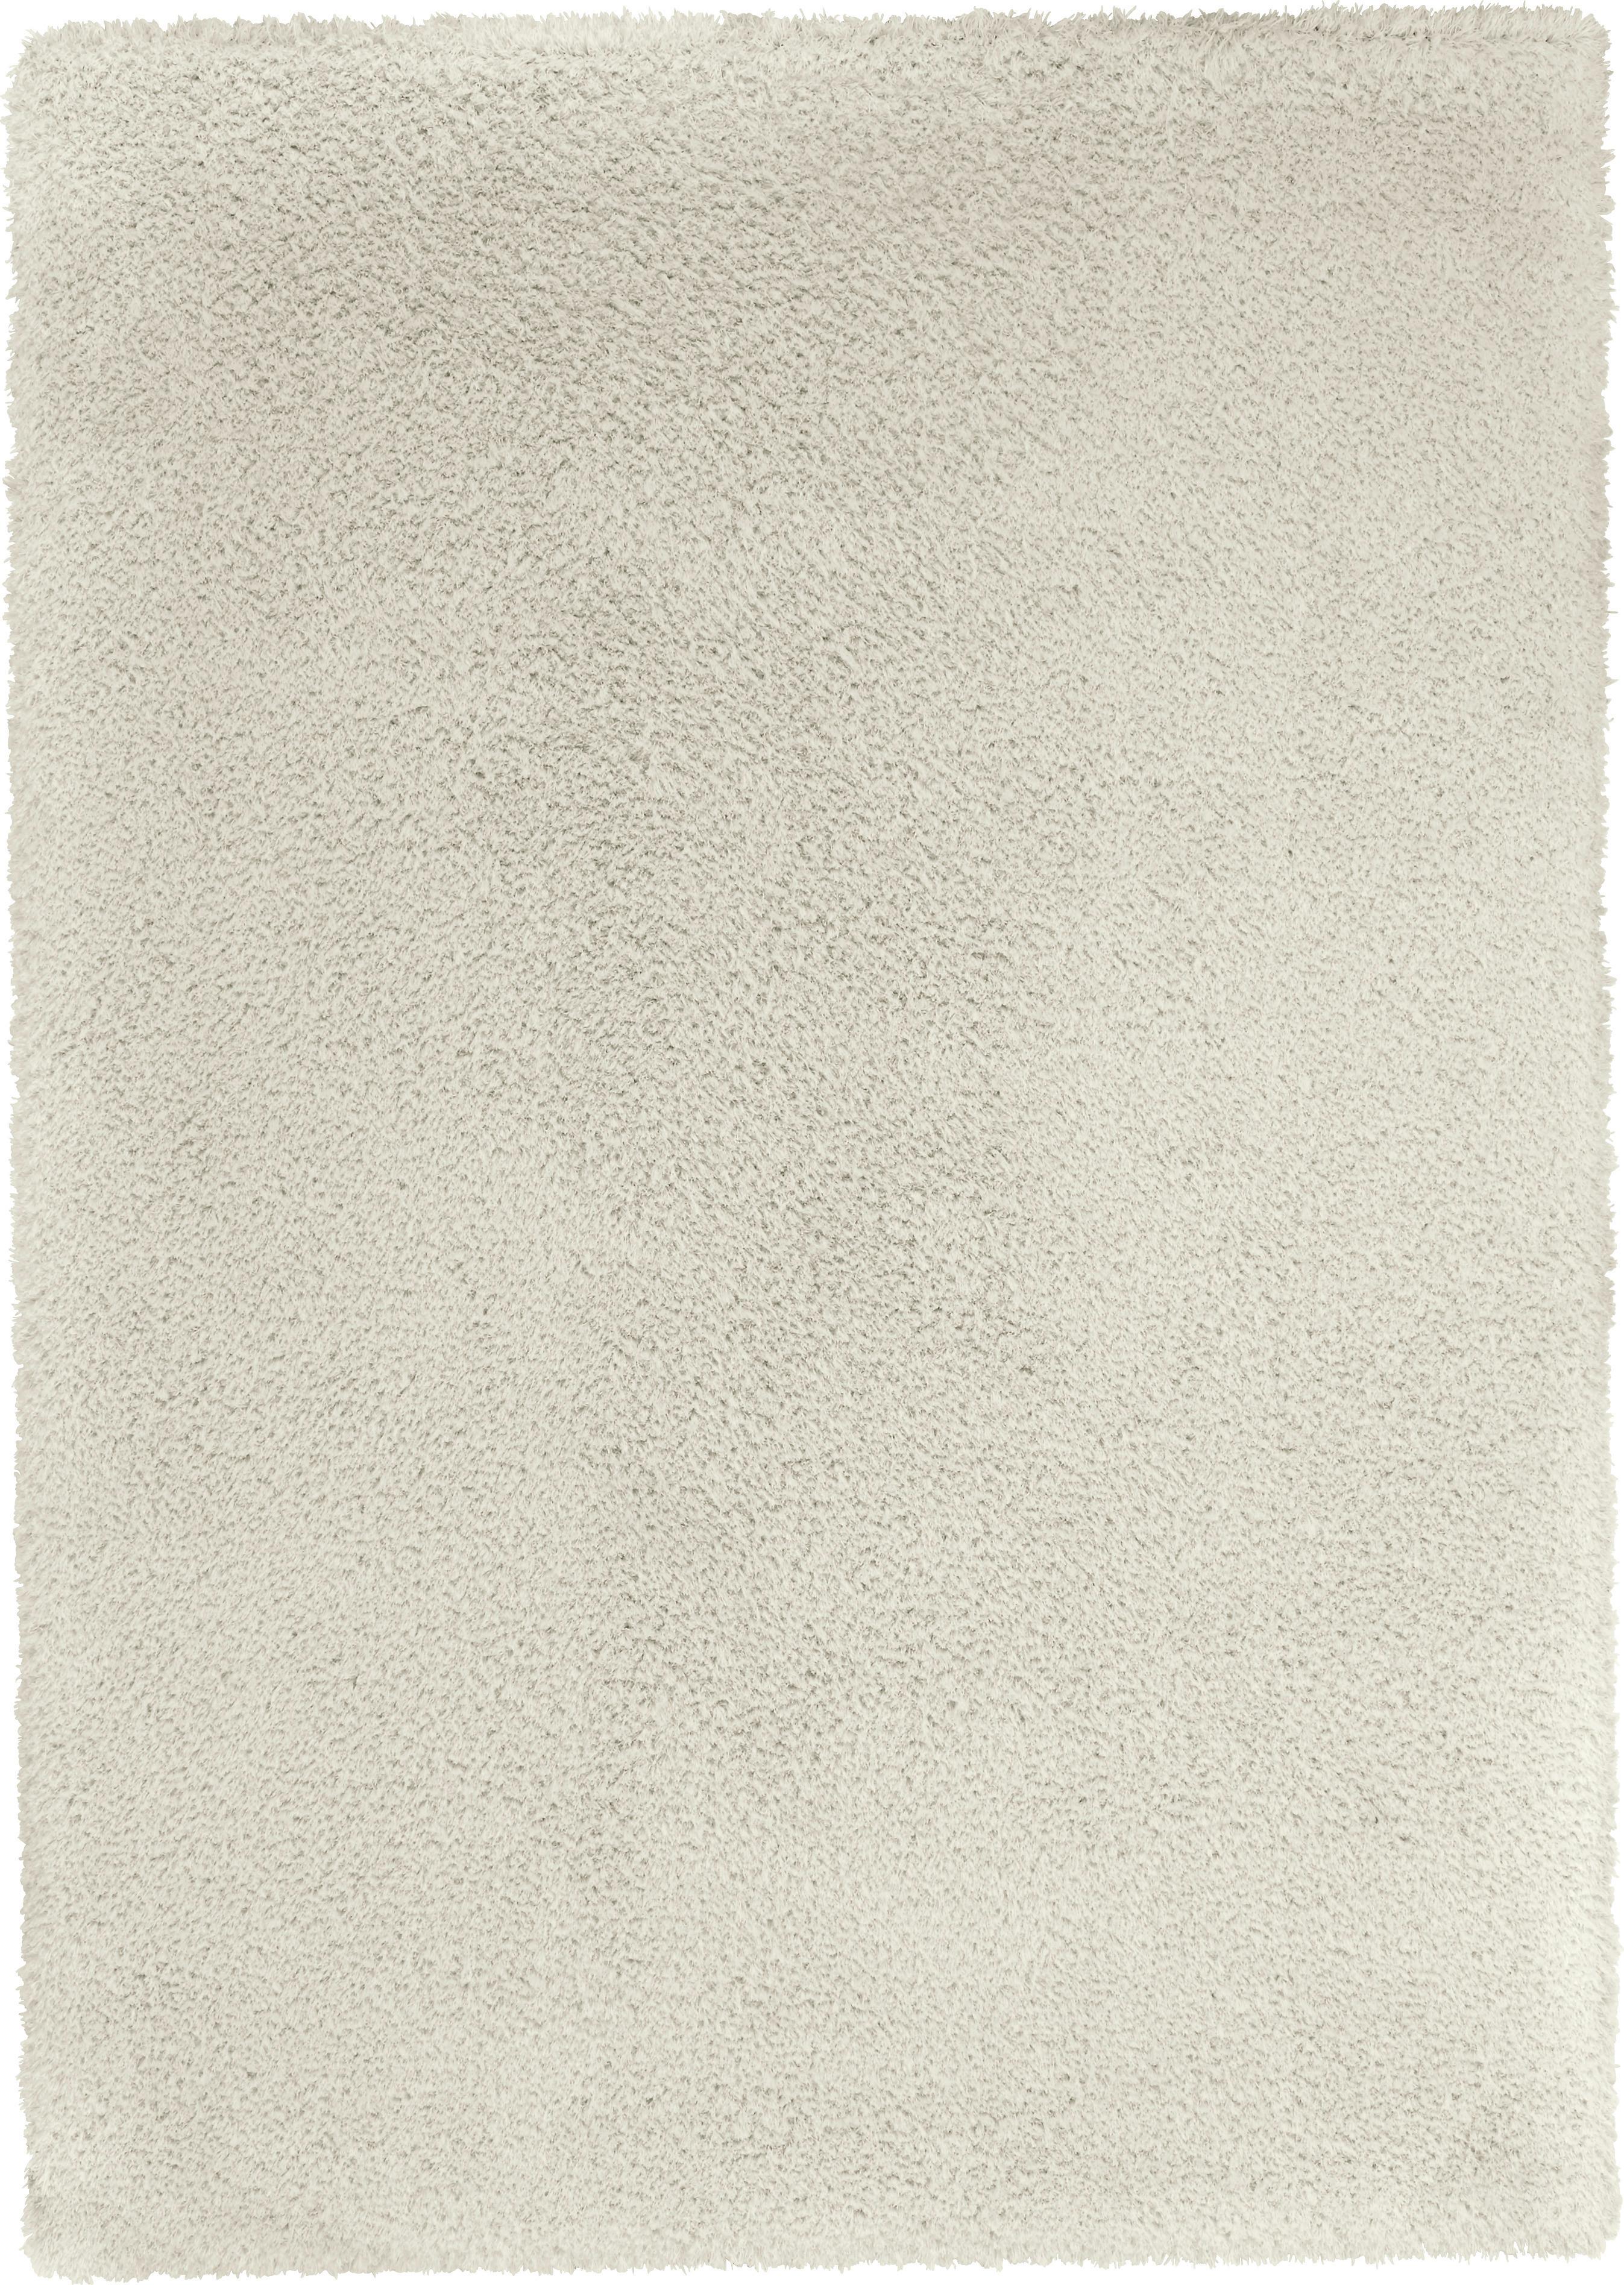 Shaggy Stefan Weiß 160x230cm - Weiß, MODERN, Textil (160/230cm) - Modern Living